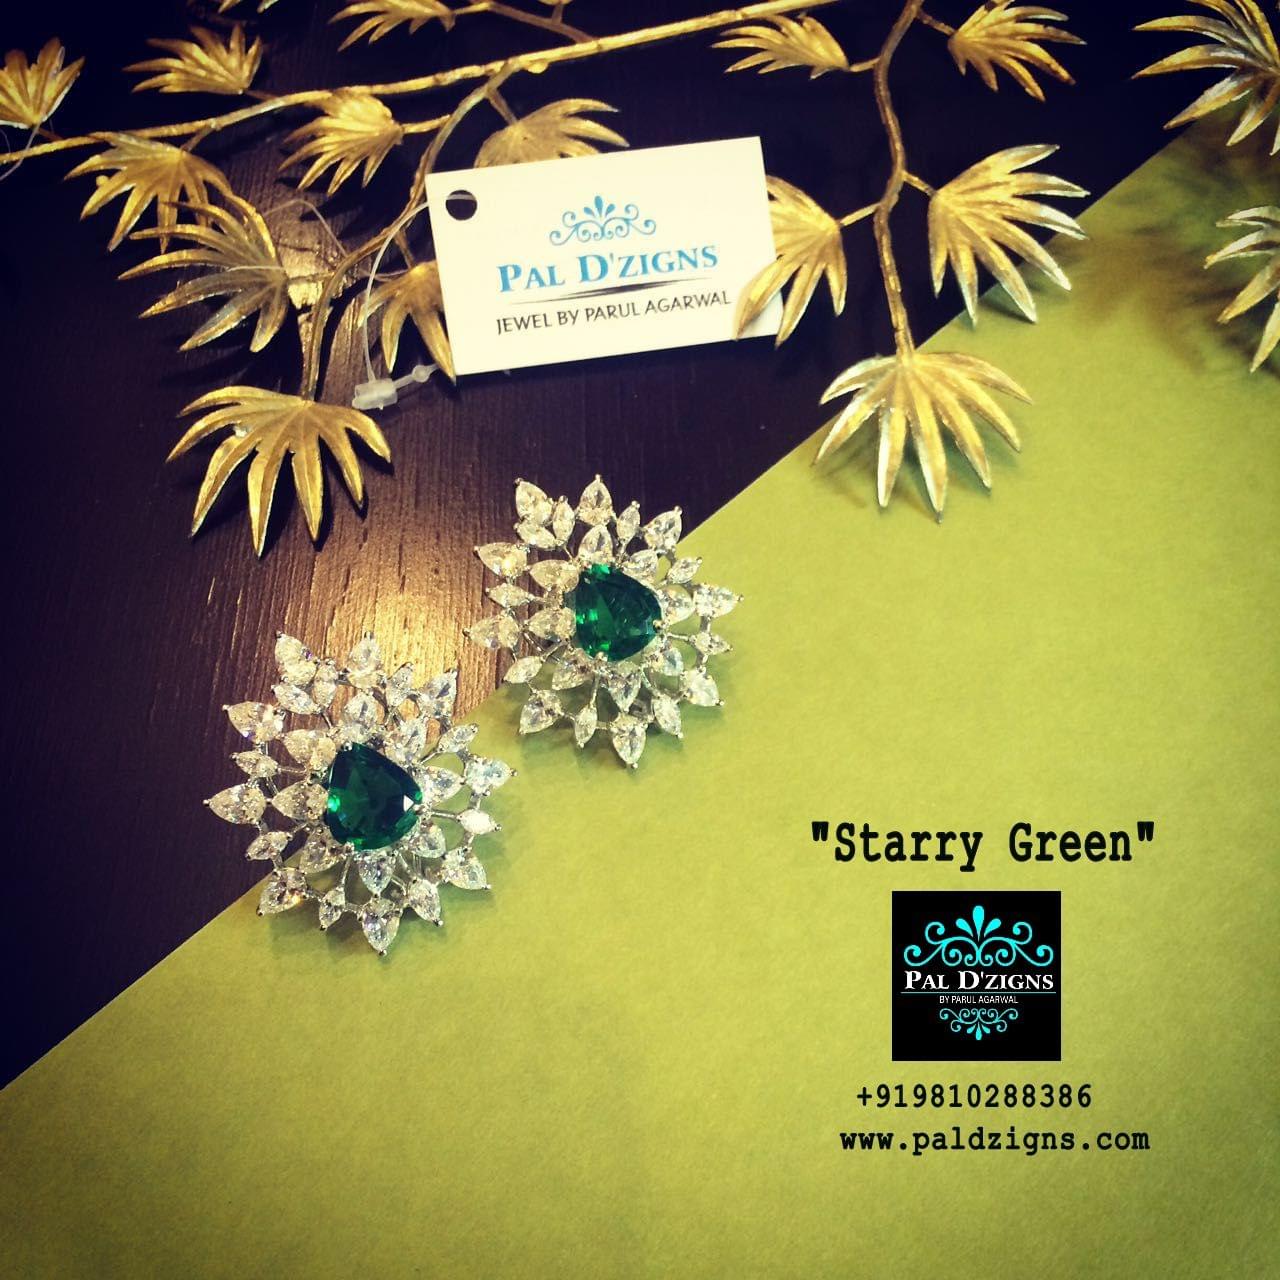 Starry Green Diamond earring